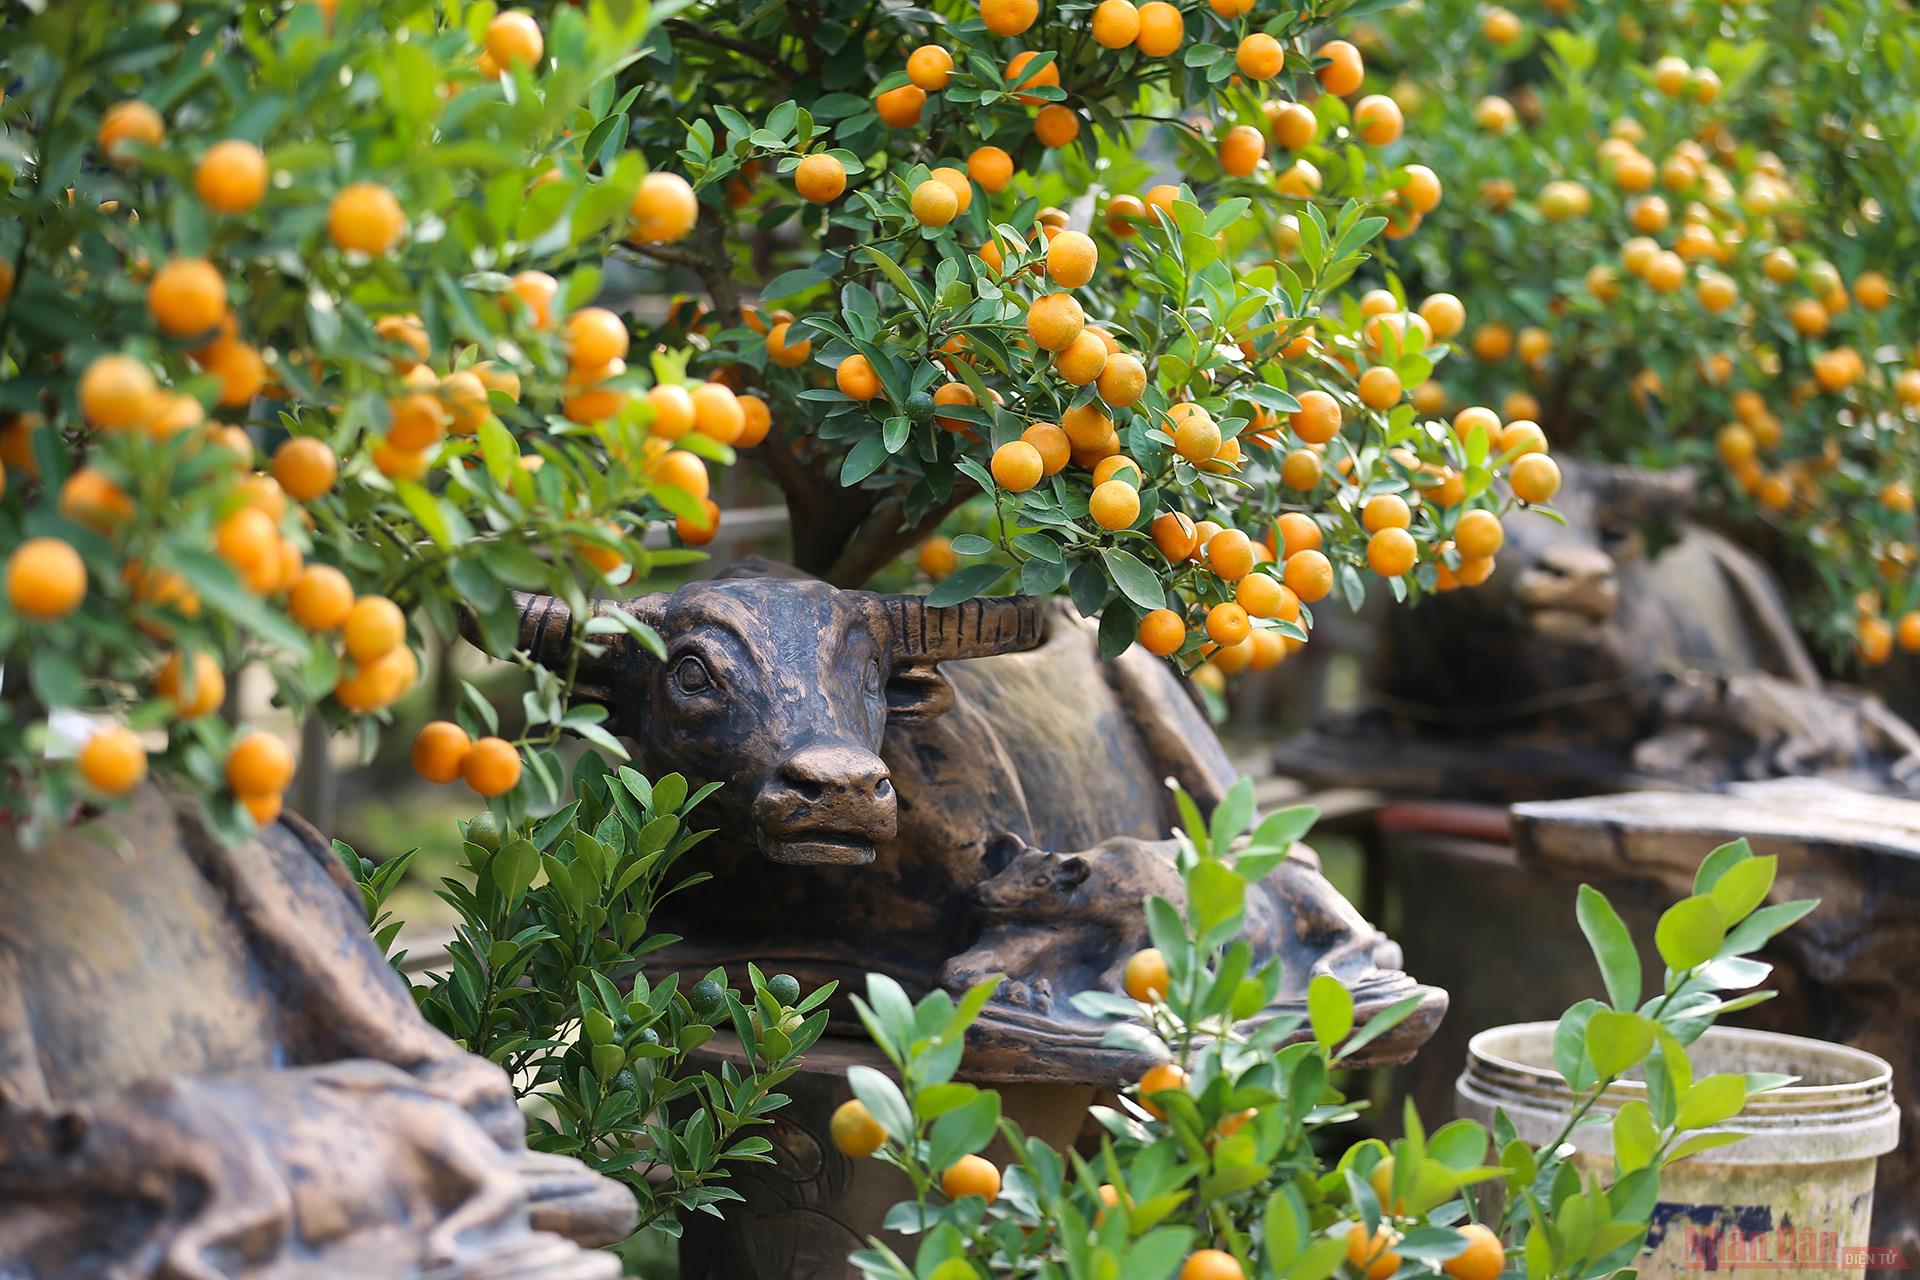  Năm nay là năm con trâu, nhiều nhà vườn đã bắt theo xu hướng tiến hành trồng quất bonsai trên lưng những con trâu bằng gốm phục vụ người dân chơi Tết.